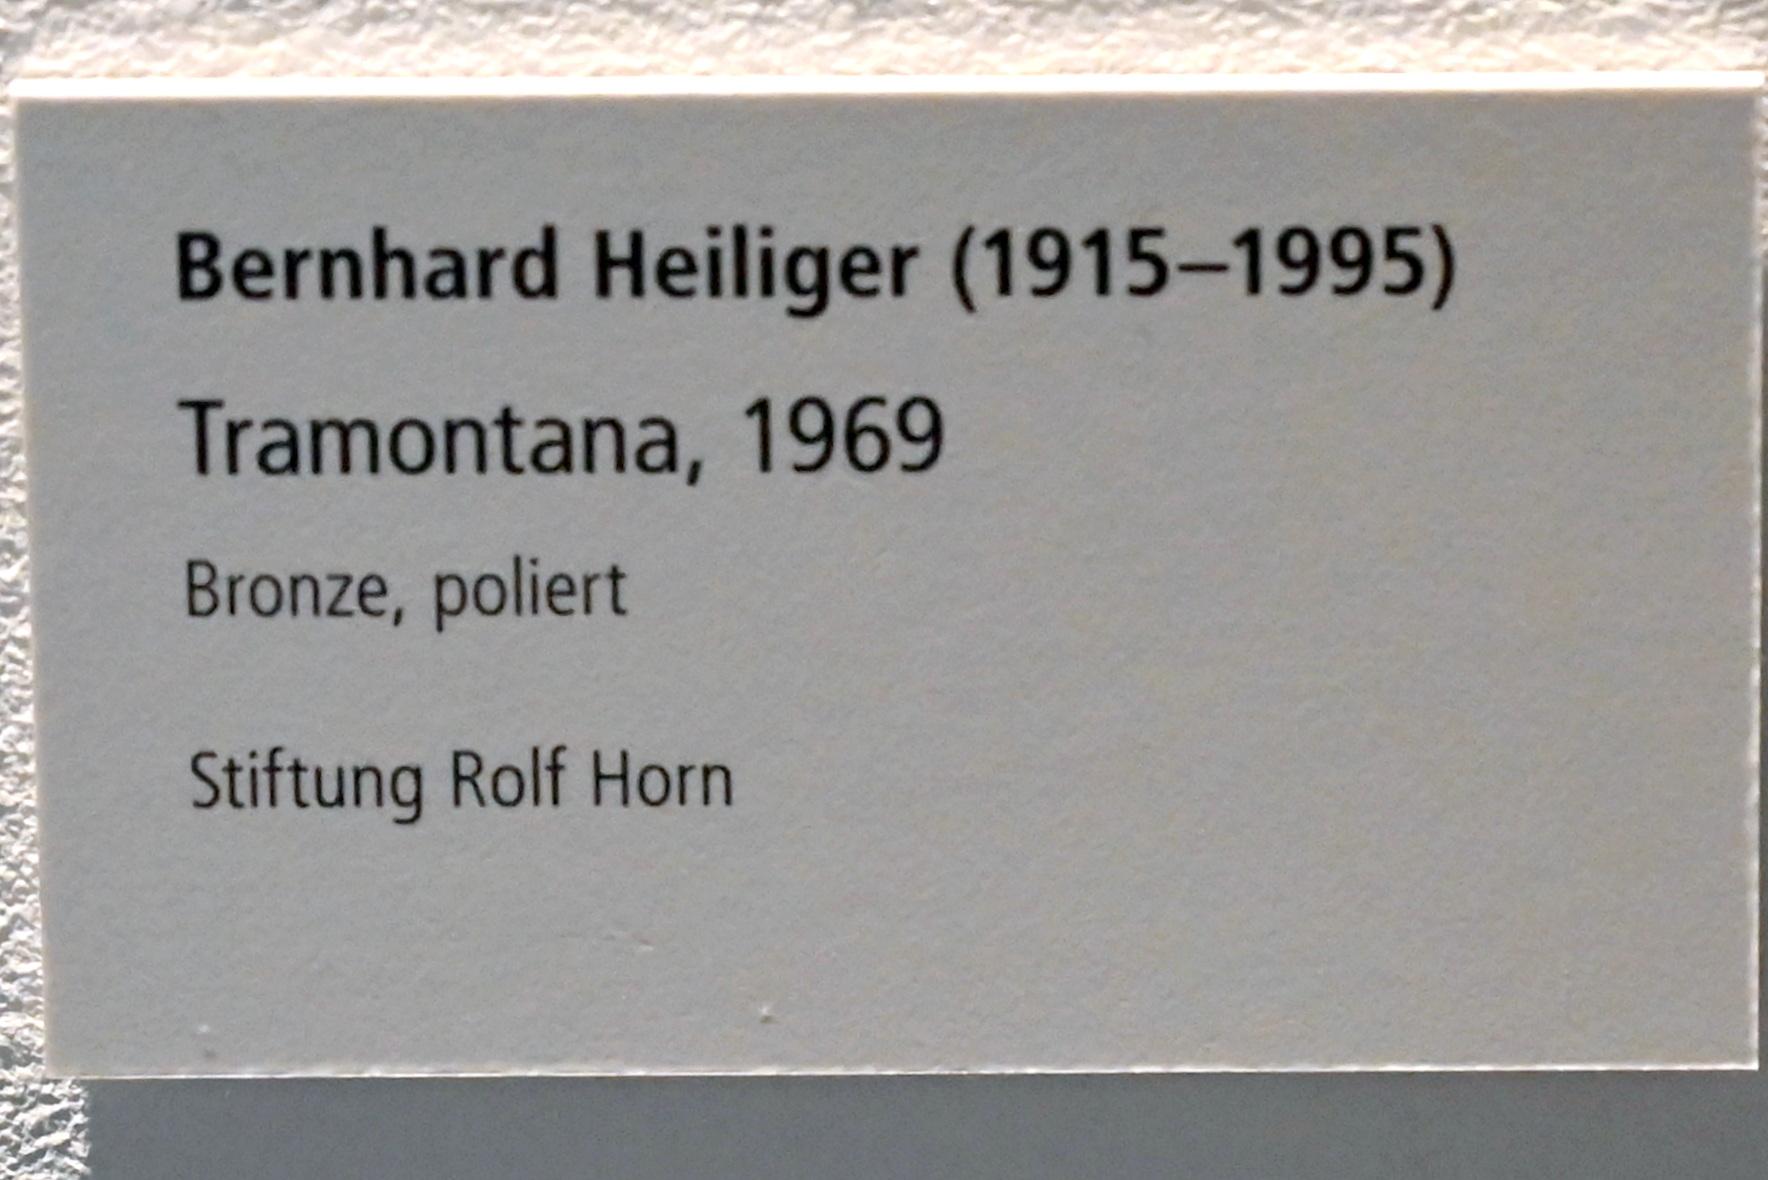 Bernhard Heiliger (1965–1983), Tramontana, Schleswig, Landesmuseum für Kunst und Kulturgeschichte, Galerie der Klassischen Moderne, 1969, Bild 2/2